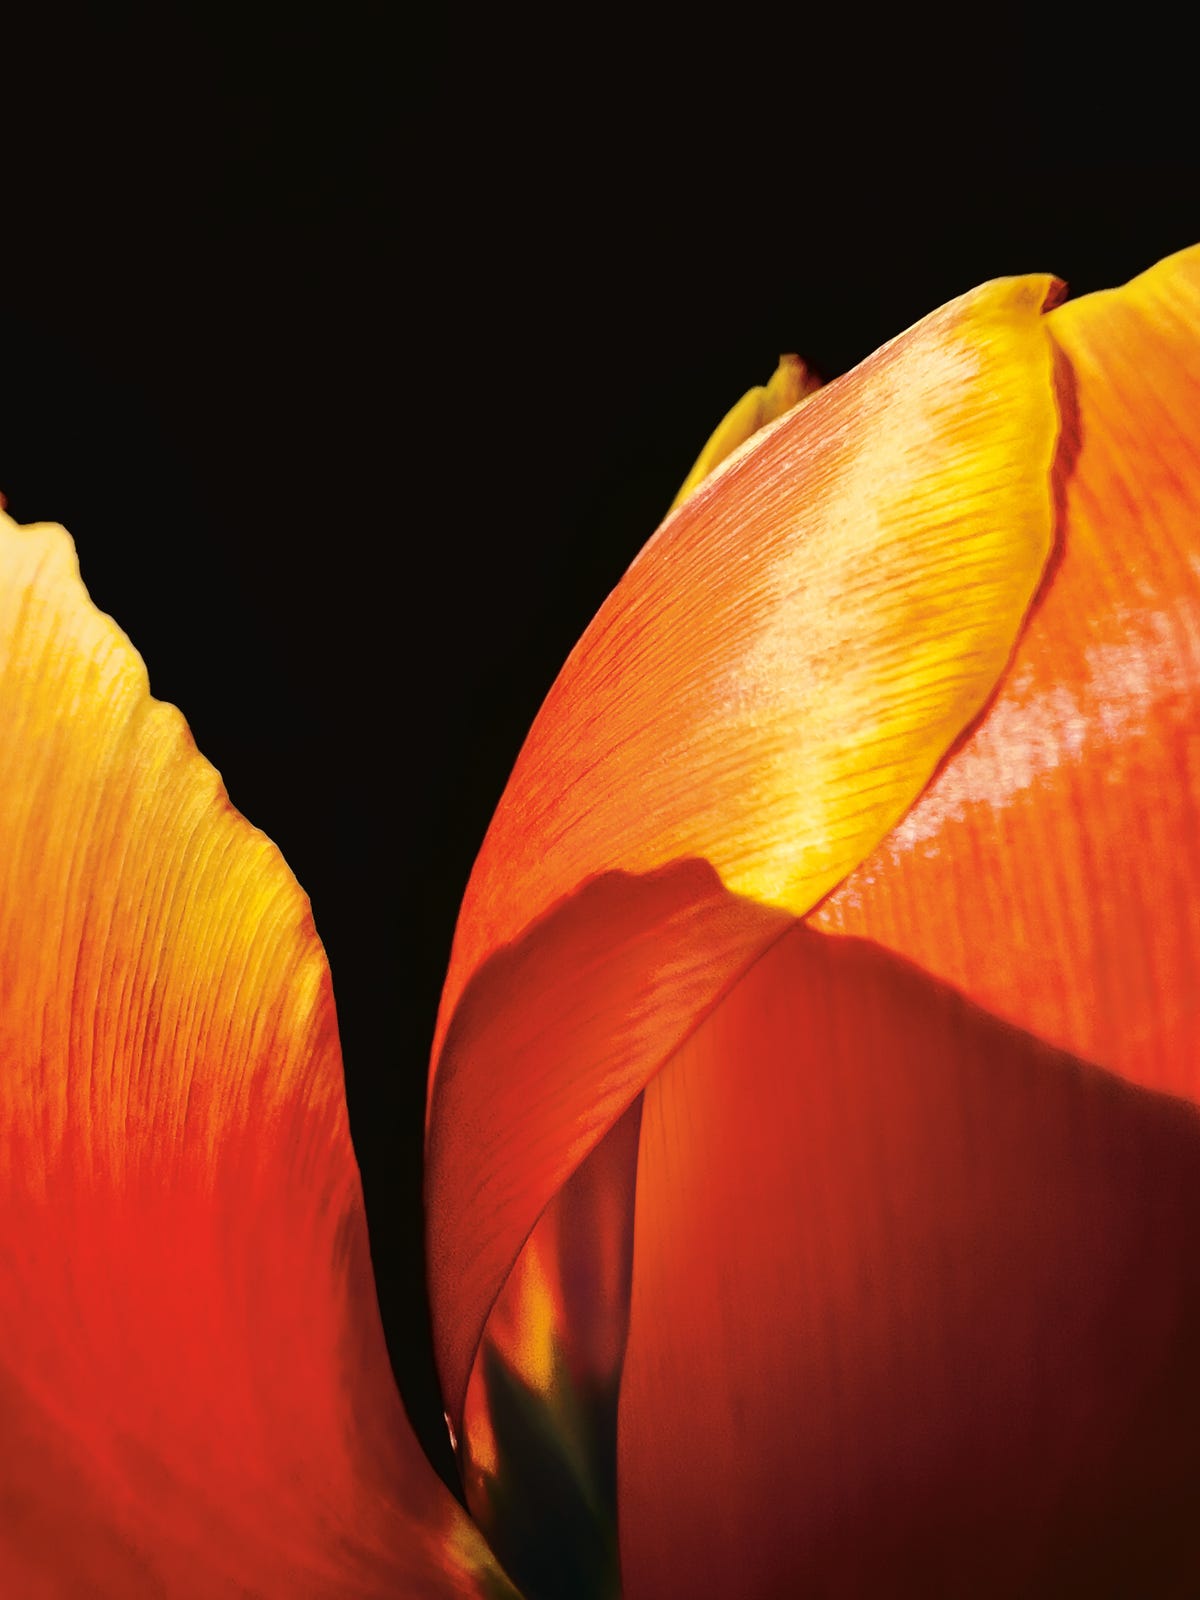 A close-up shot of a tulip's petals.